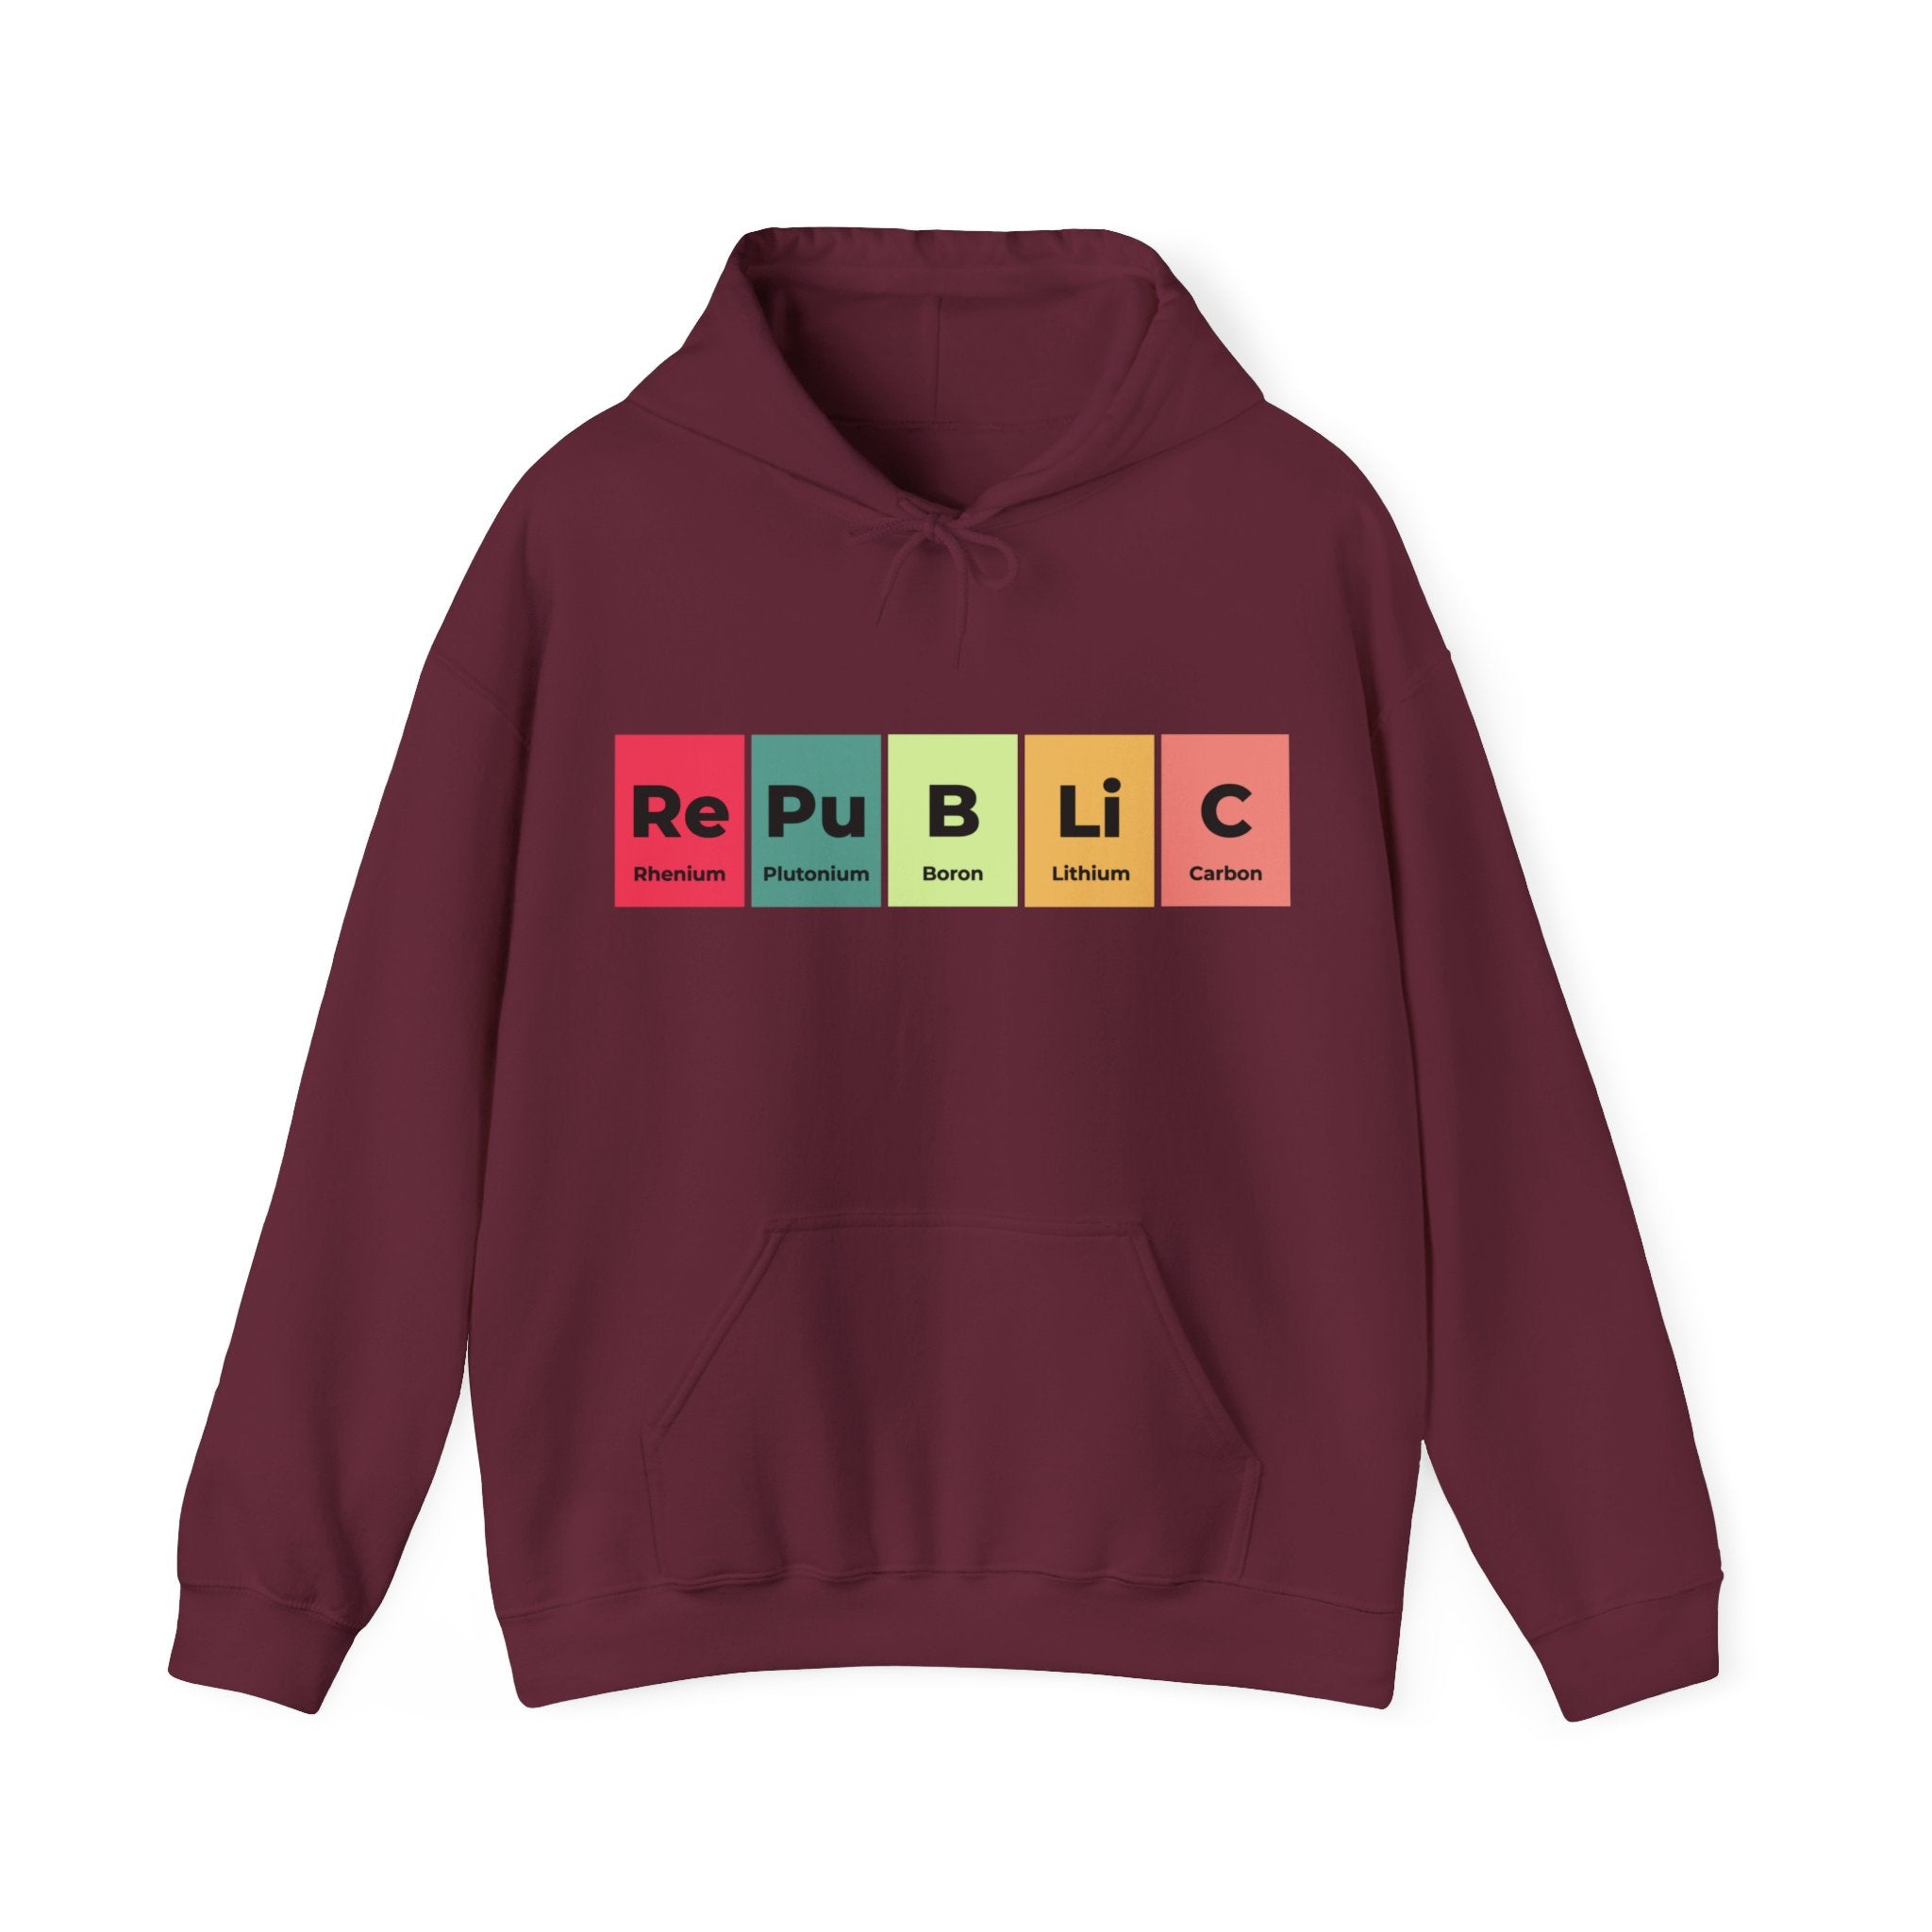 Republic - Hooded Sweatshirt with "RePuBLiC" displayed using periodic table elements: Rhenium, Plutonium, Boron, Lithium, Carbon. Show off your patriotic pride with this unique Republic design.